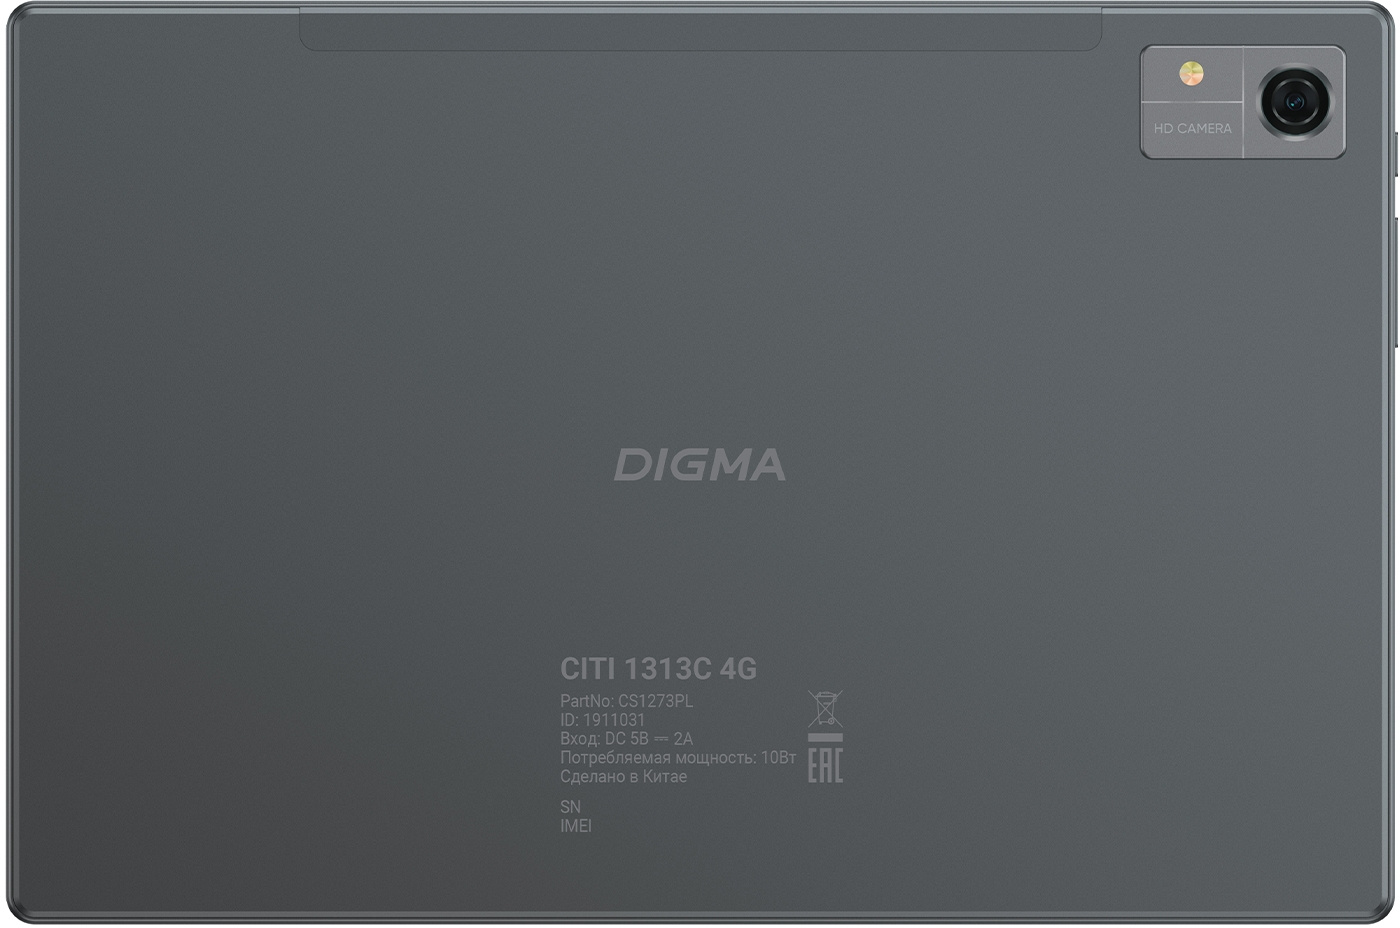 Ремонт планшетов Digma в Москве — мастера по ремонту планшетов, 55 отзывов на Профи